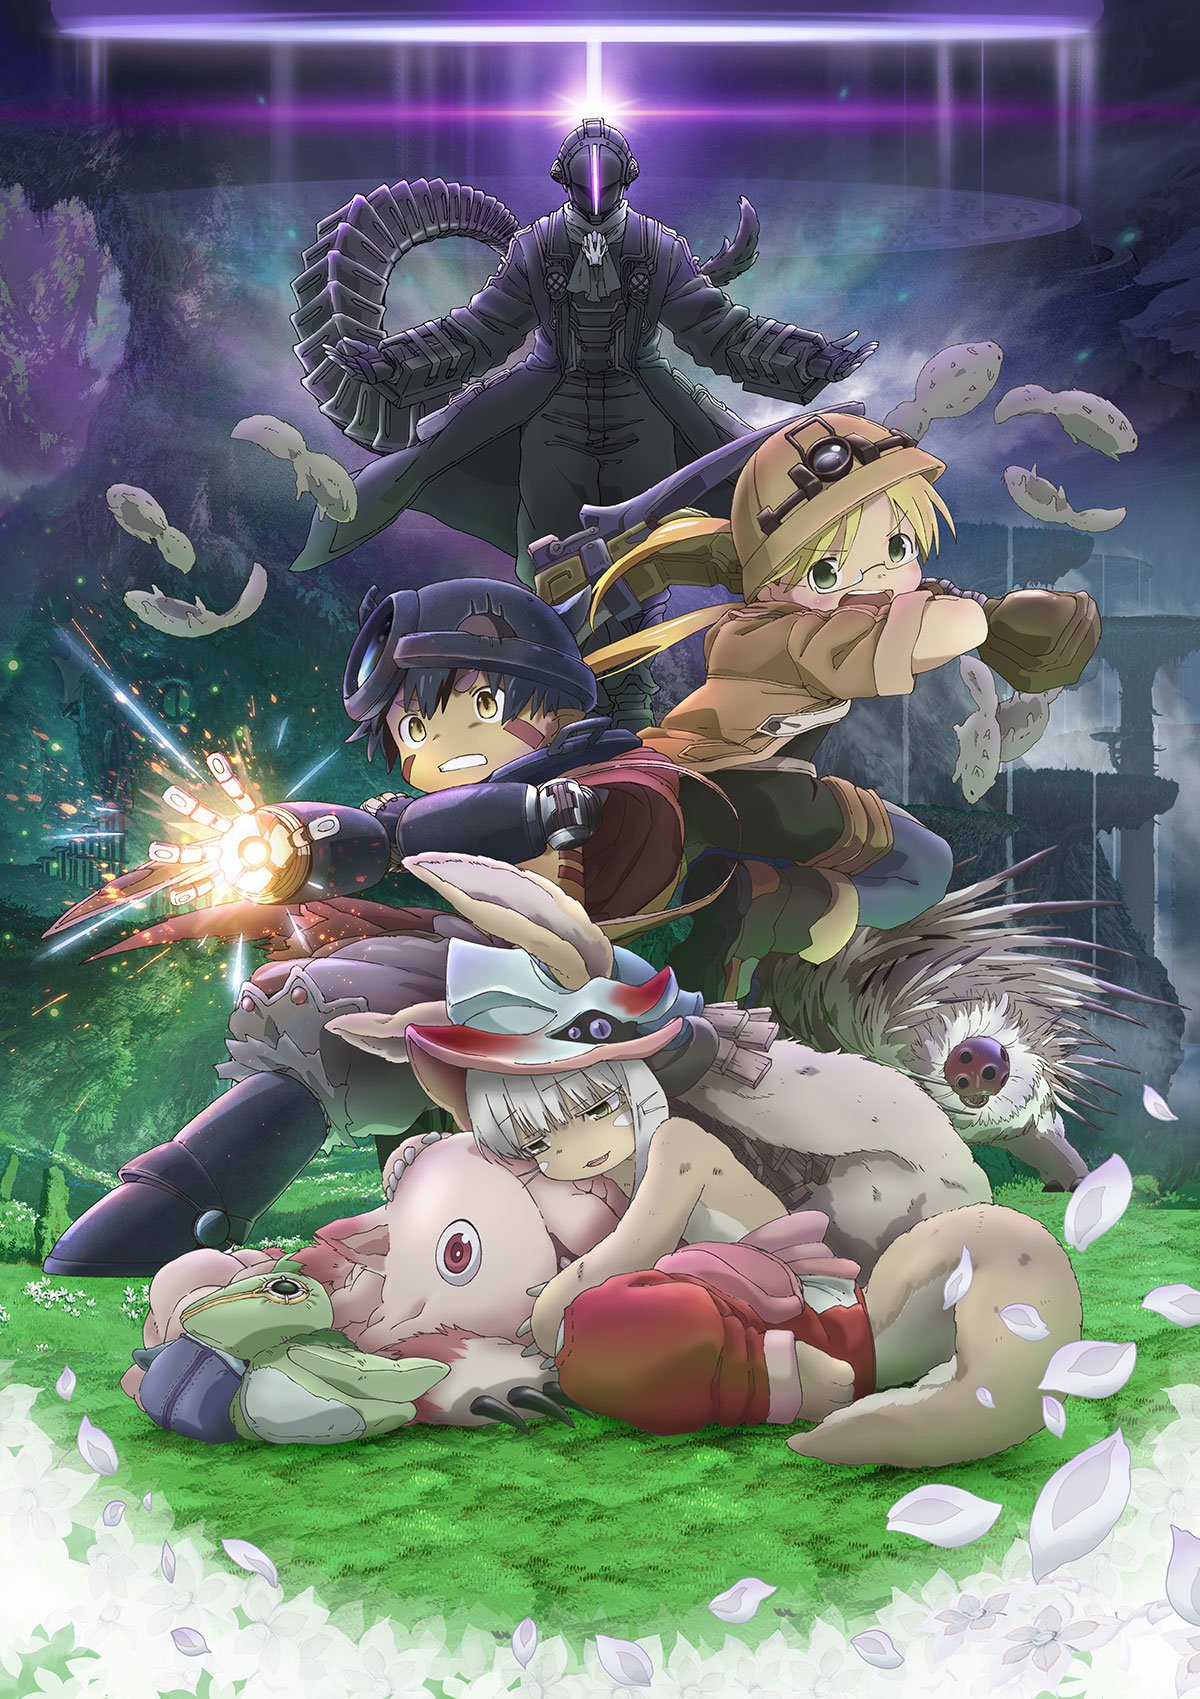 Animes In Japan 🎄 on X: INFO O excelente anime Made in Abyss será  adicionado em breve ao catálogo brasileiro da Netflix, já possuindo uma  página cadastrada no sistema!  / X